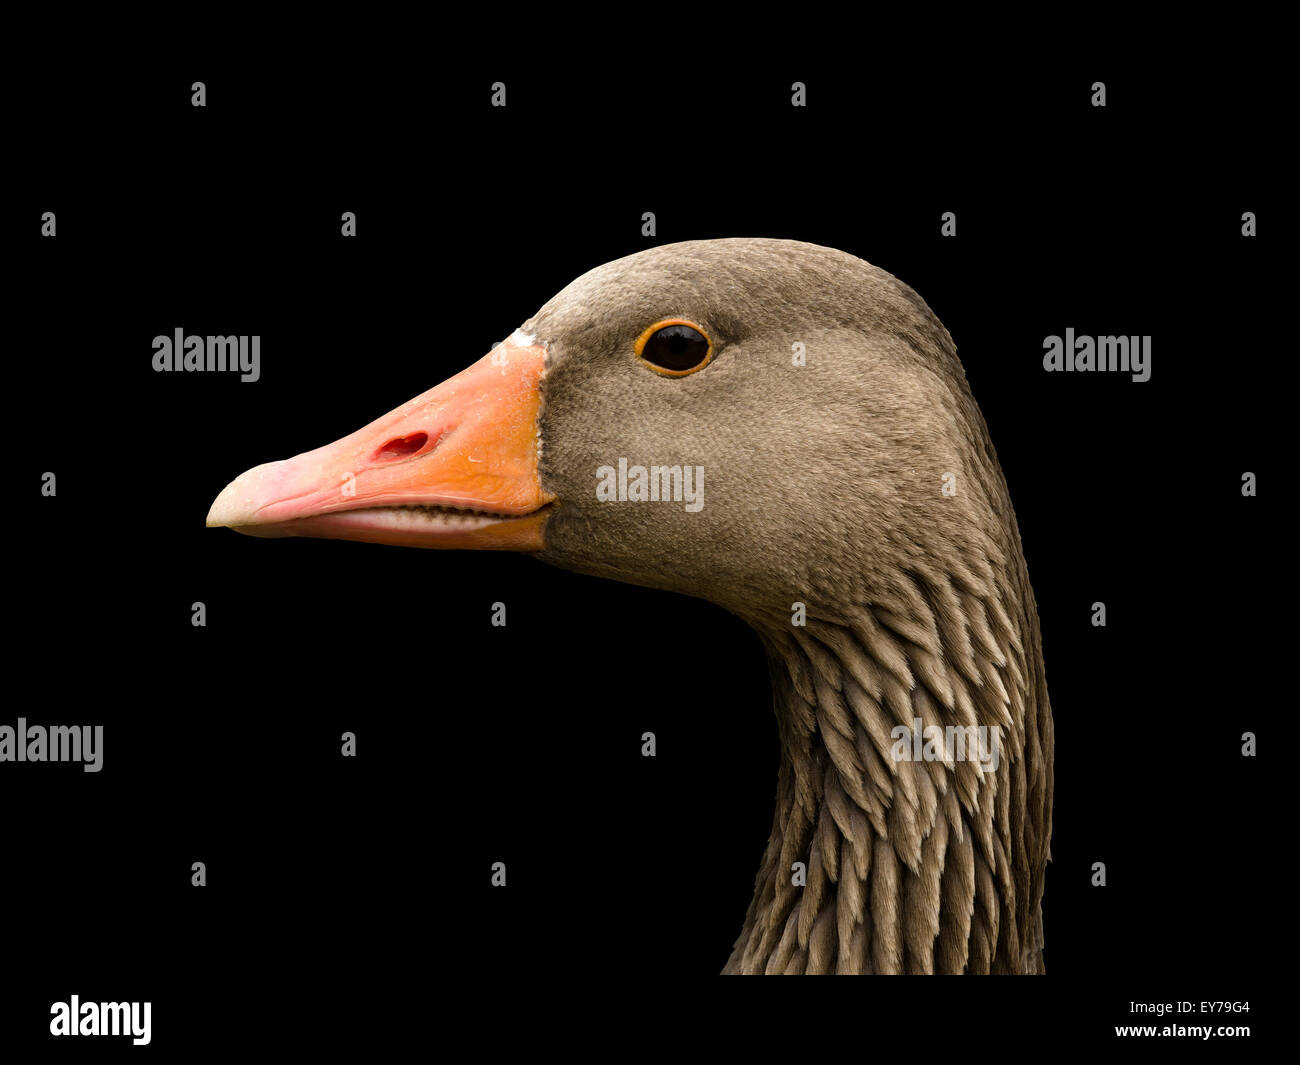 Head of wild Greylag goose (Anser anser) against black background, UK. Stock Photo